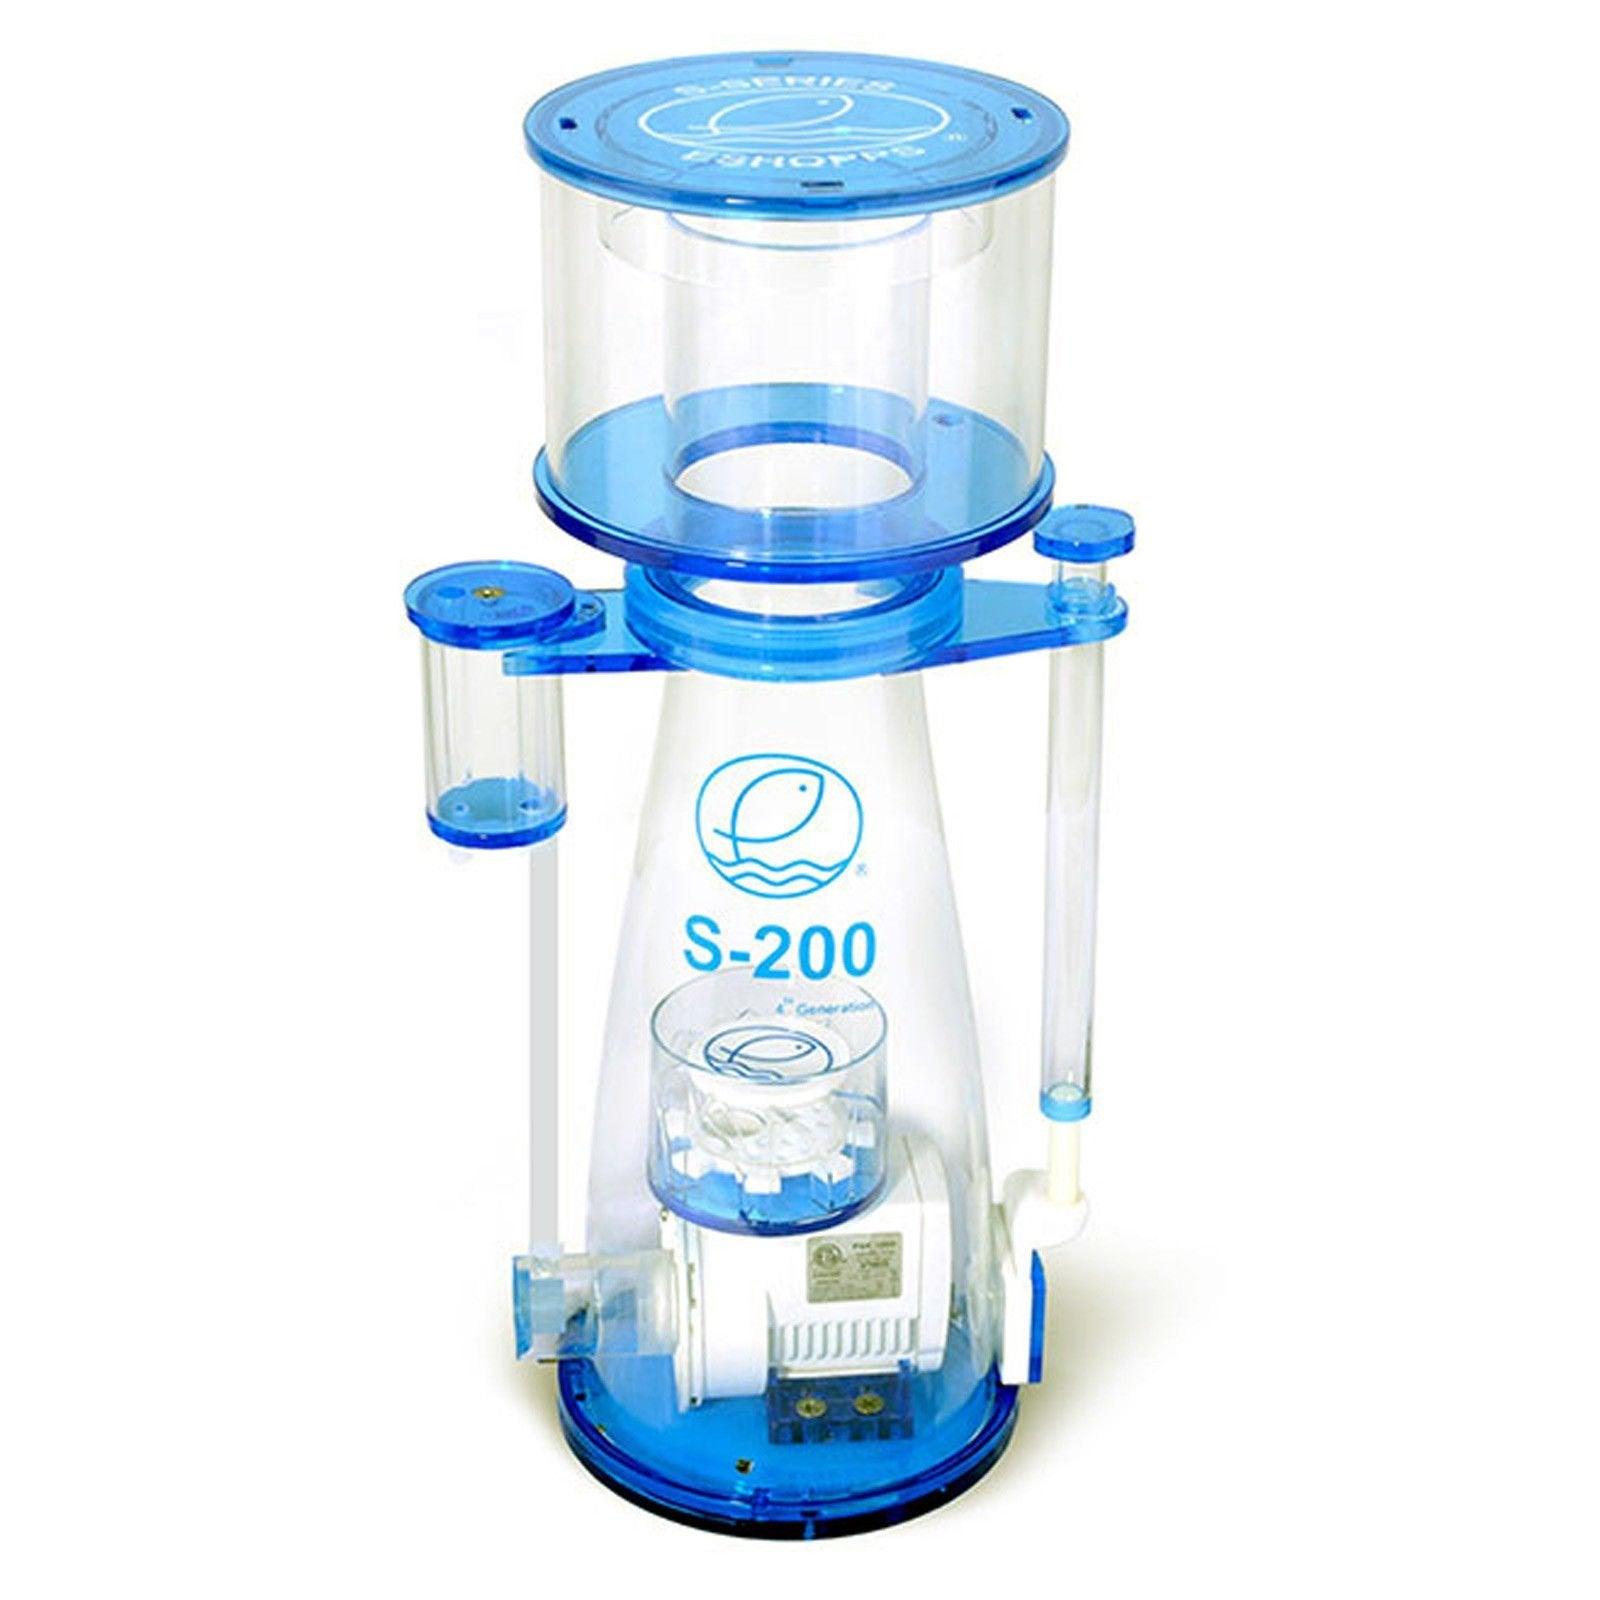 Eshopps S-200 Premium Protein Skimmer 450-1000 Litres